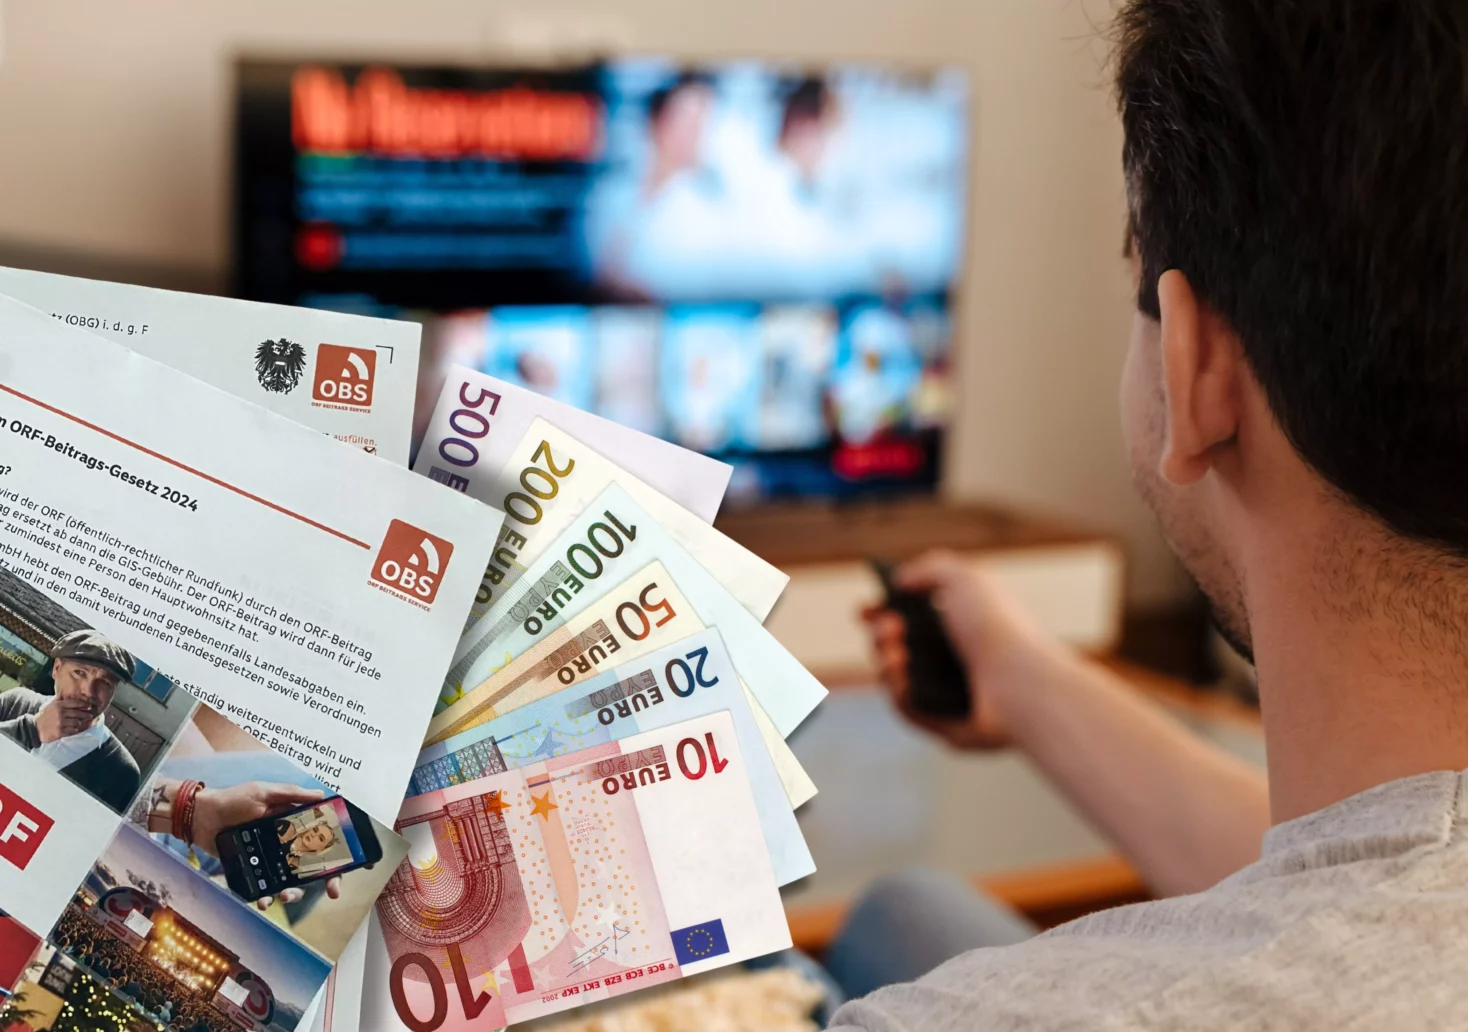 Foto in Beitrag von 5min.at: Zu sehen ist Geld, der ORF-Zettel und im Hintergrund ein Mann, der Fernsehen schaut.